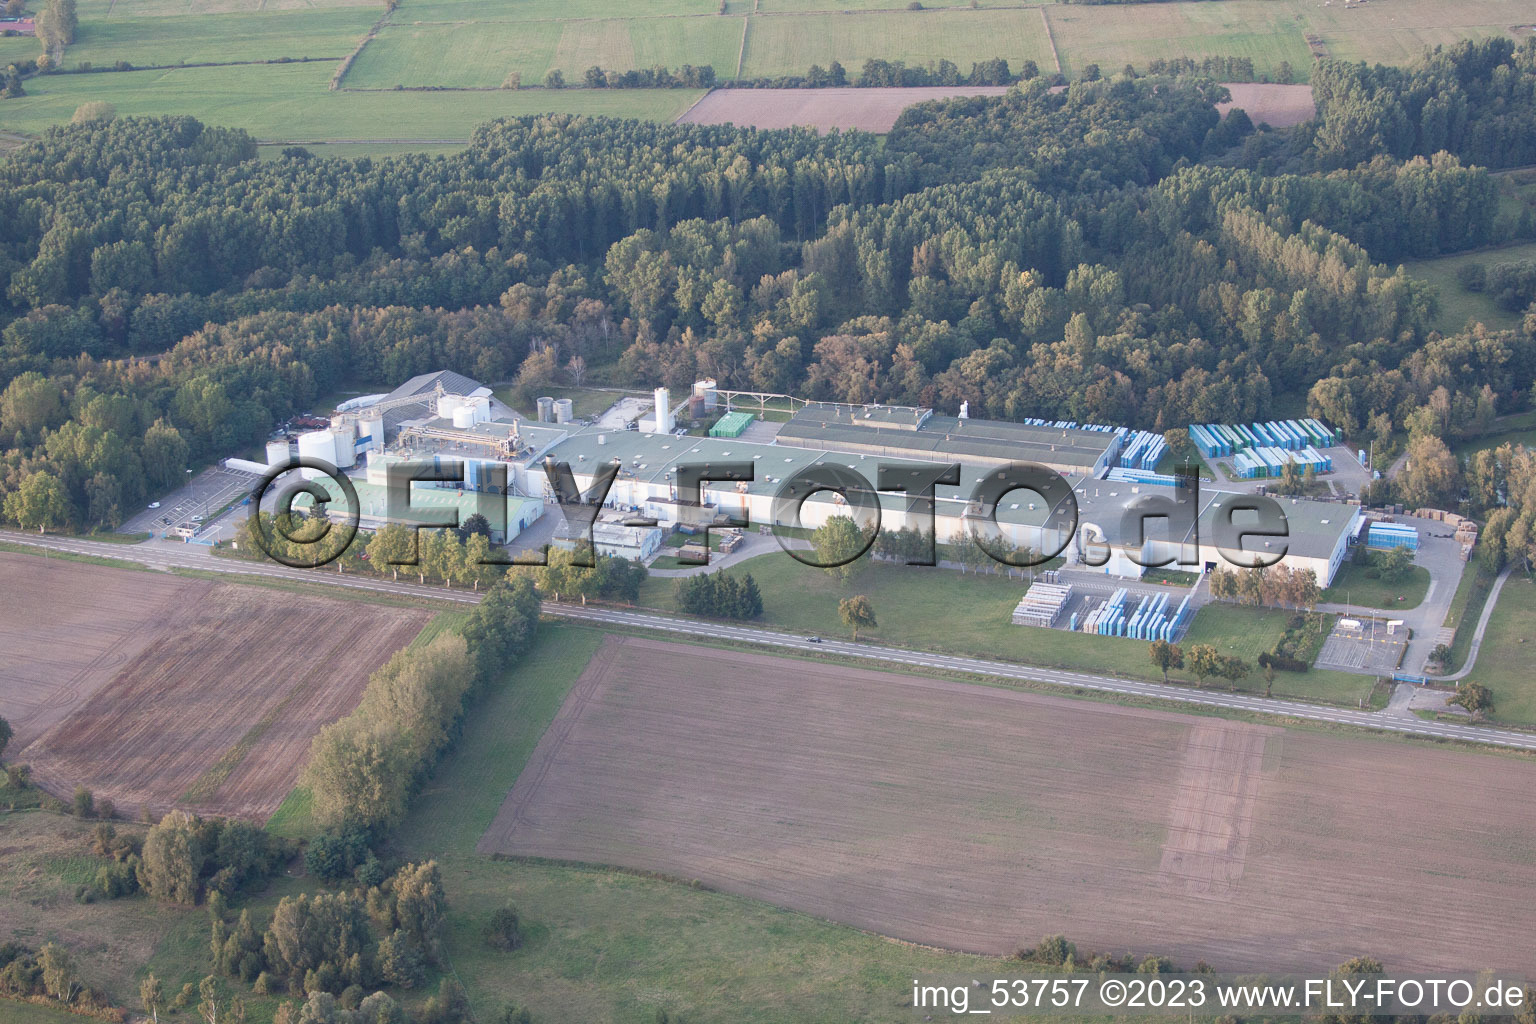 Luftbild von Altenstadt im Bundesland Bas-Rhin, Frankreich